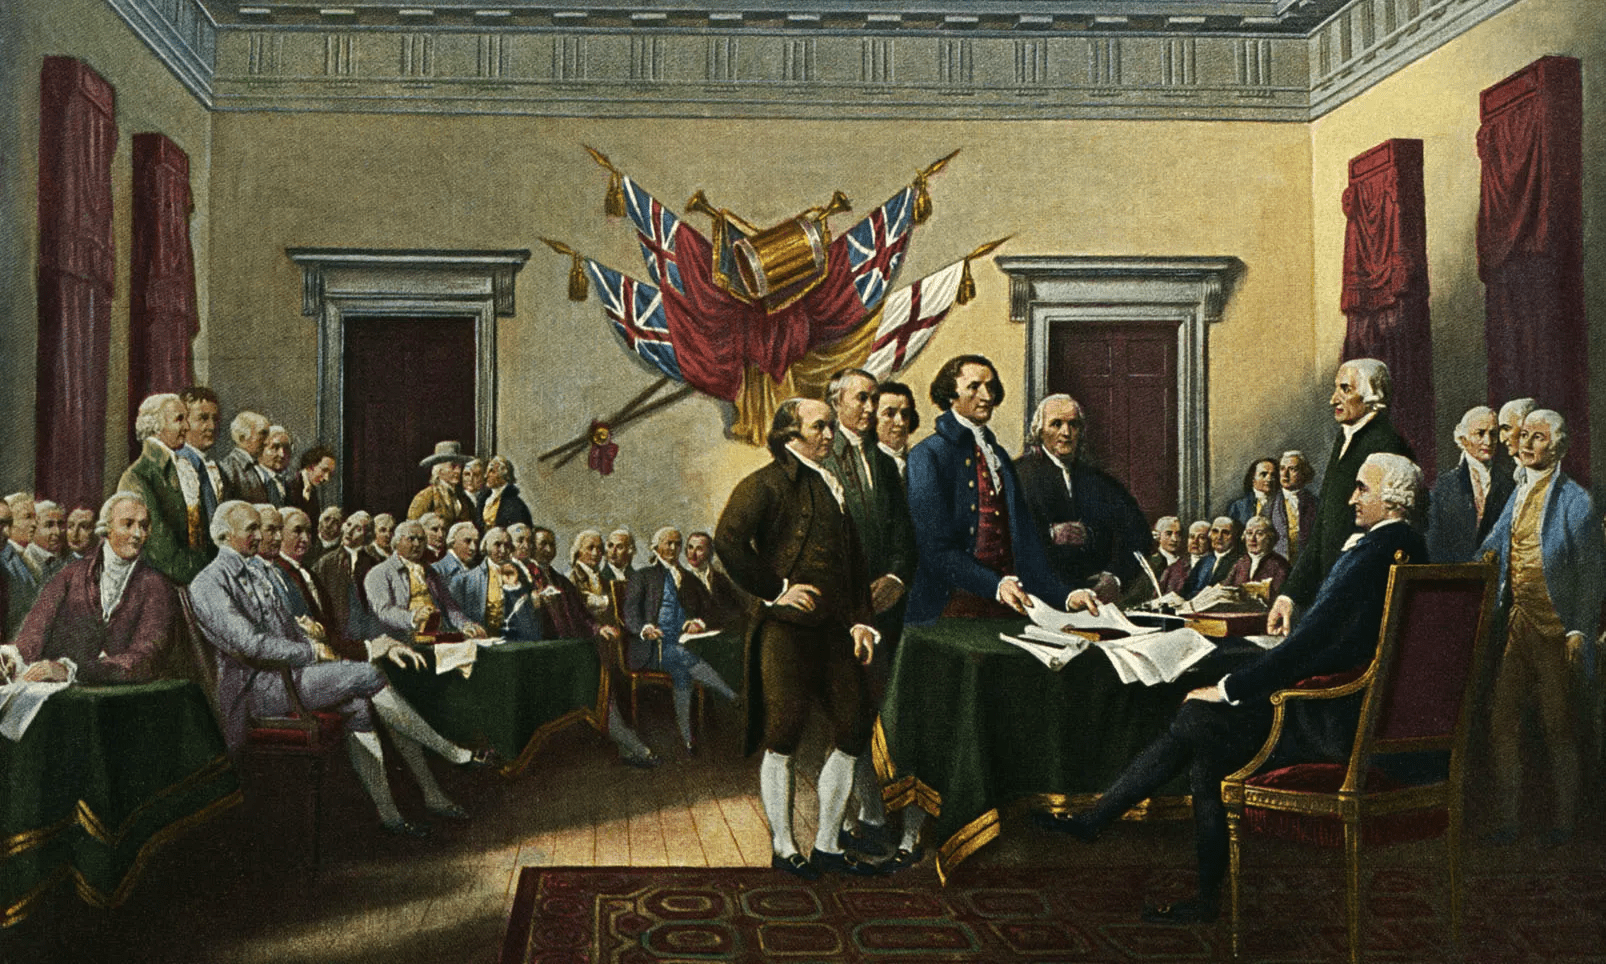 declaracion-de-la-independencia-de-los-eeuu-4-de-julio-de-1776.png